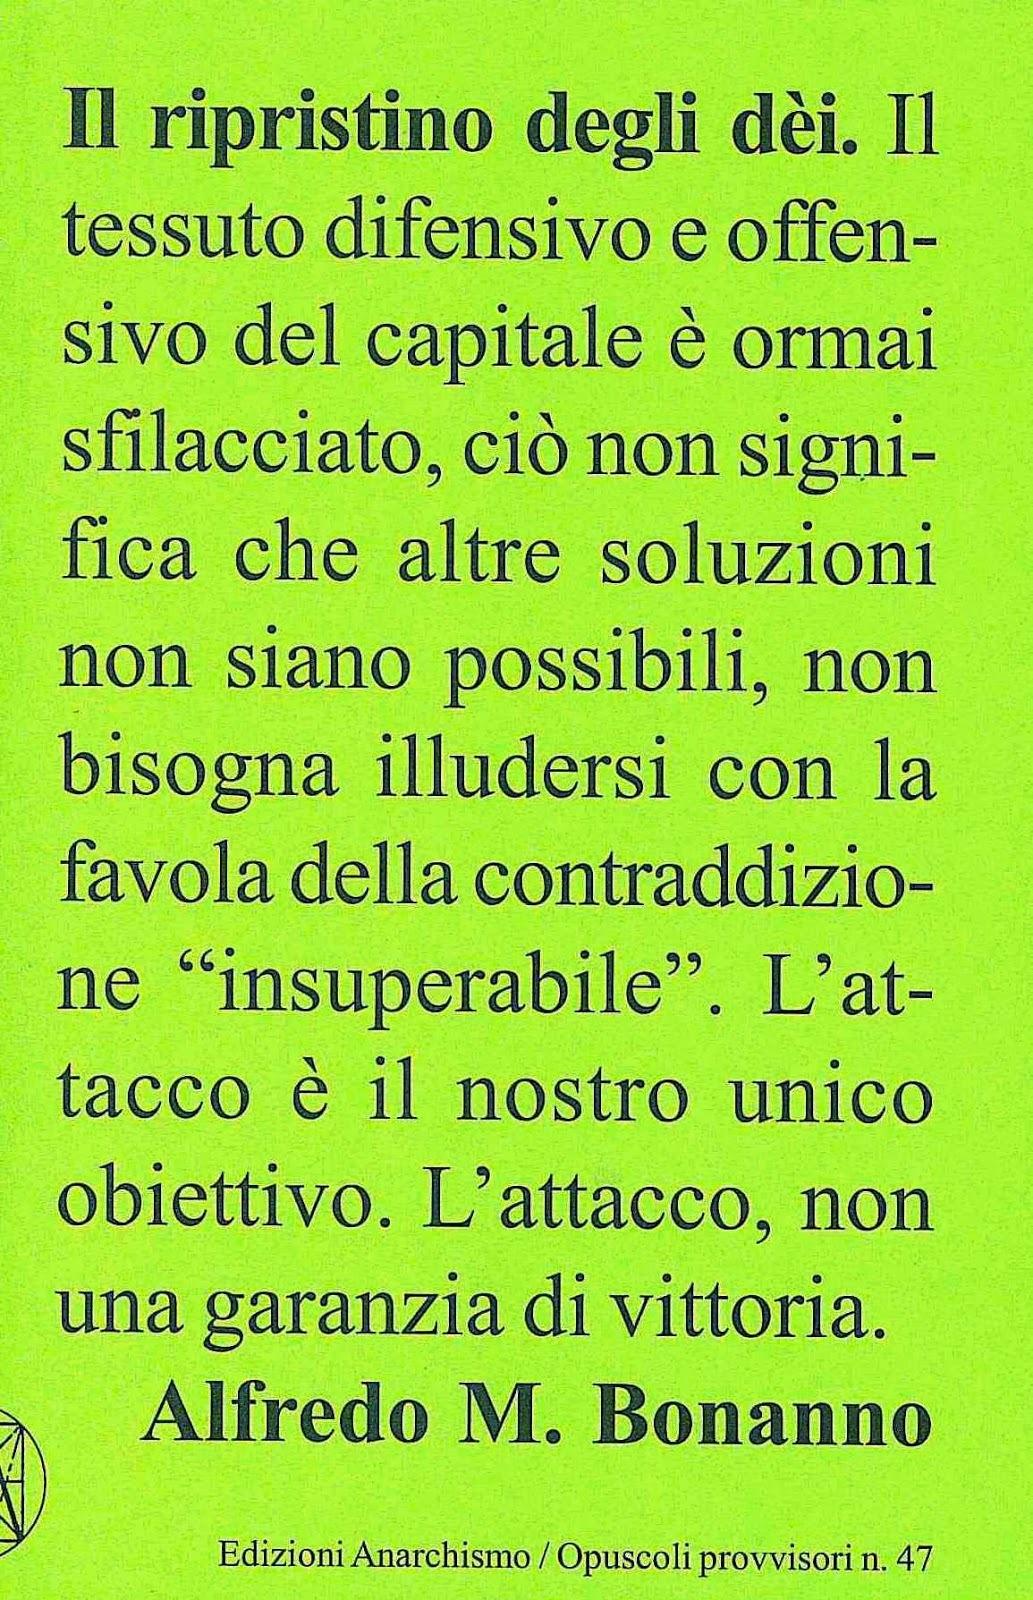 Alfredo Maria Bonanno: Il ripristino degli dèi (italiano language, 2013, Edizioni Anarchismo)